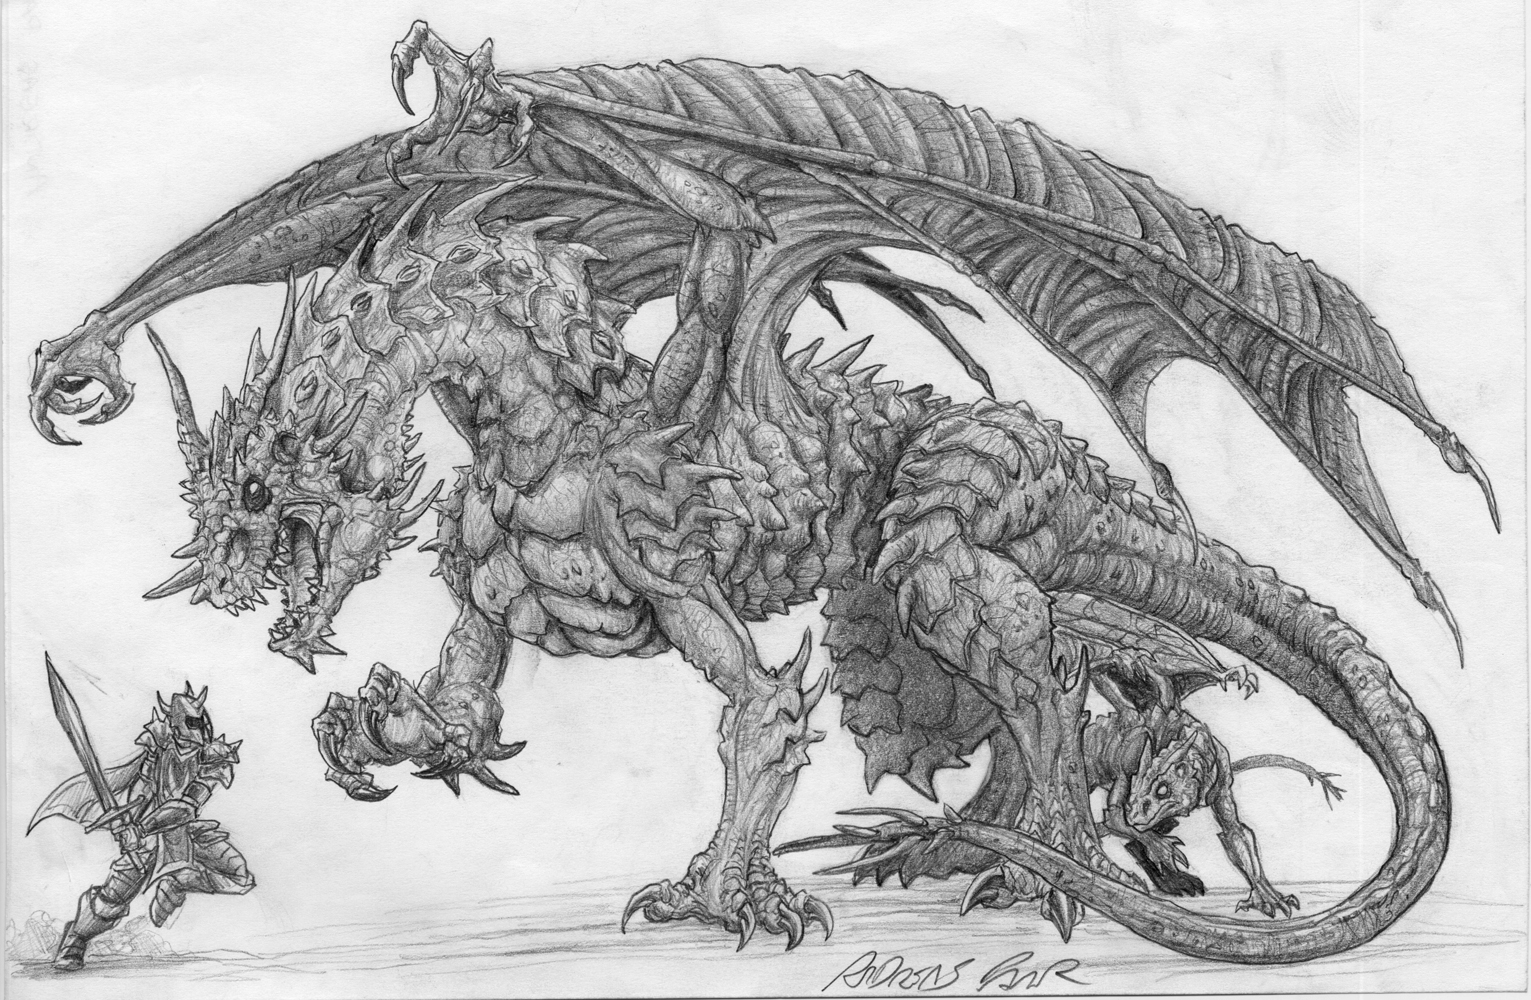 Skyrim Dragon Head Drawing - Gallery